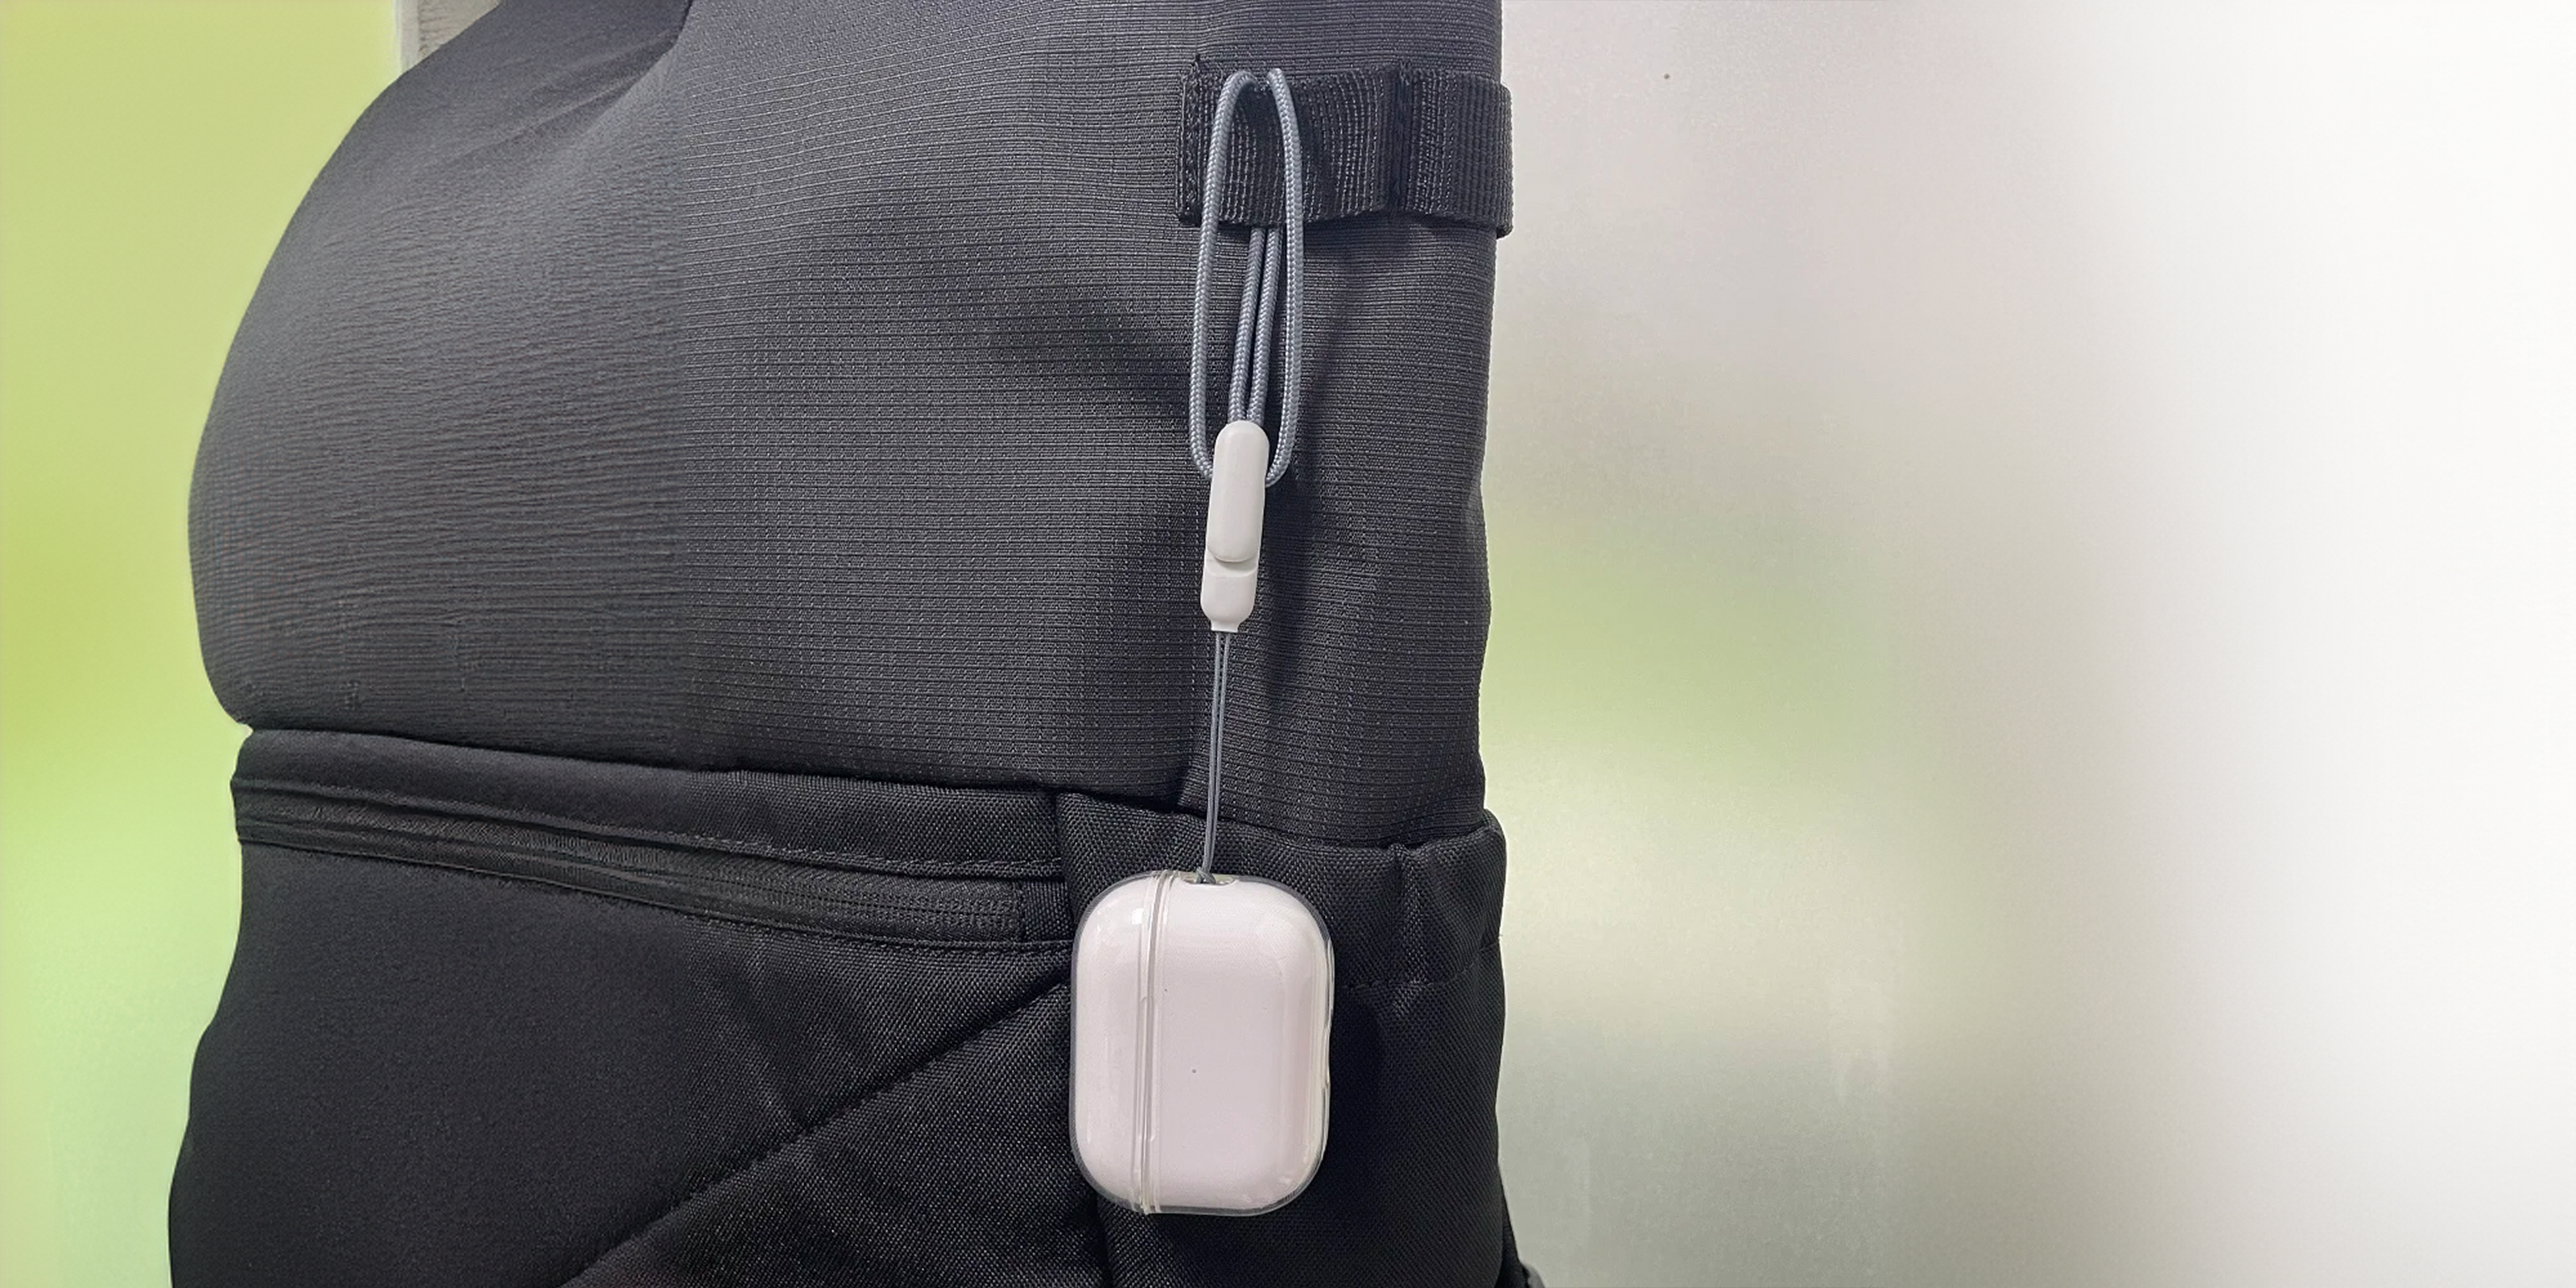 Airpods case on backpack bag - Lamkari